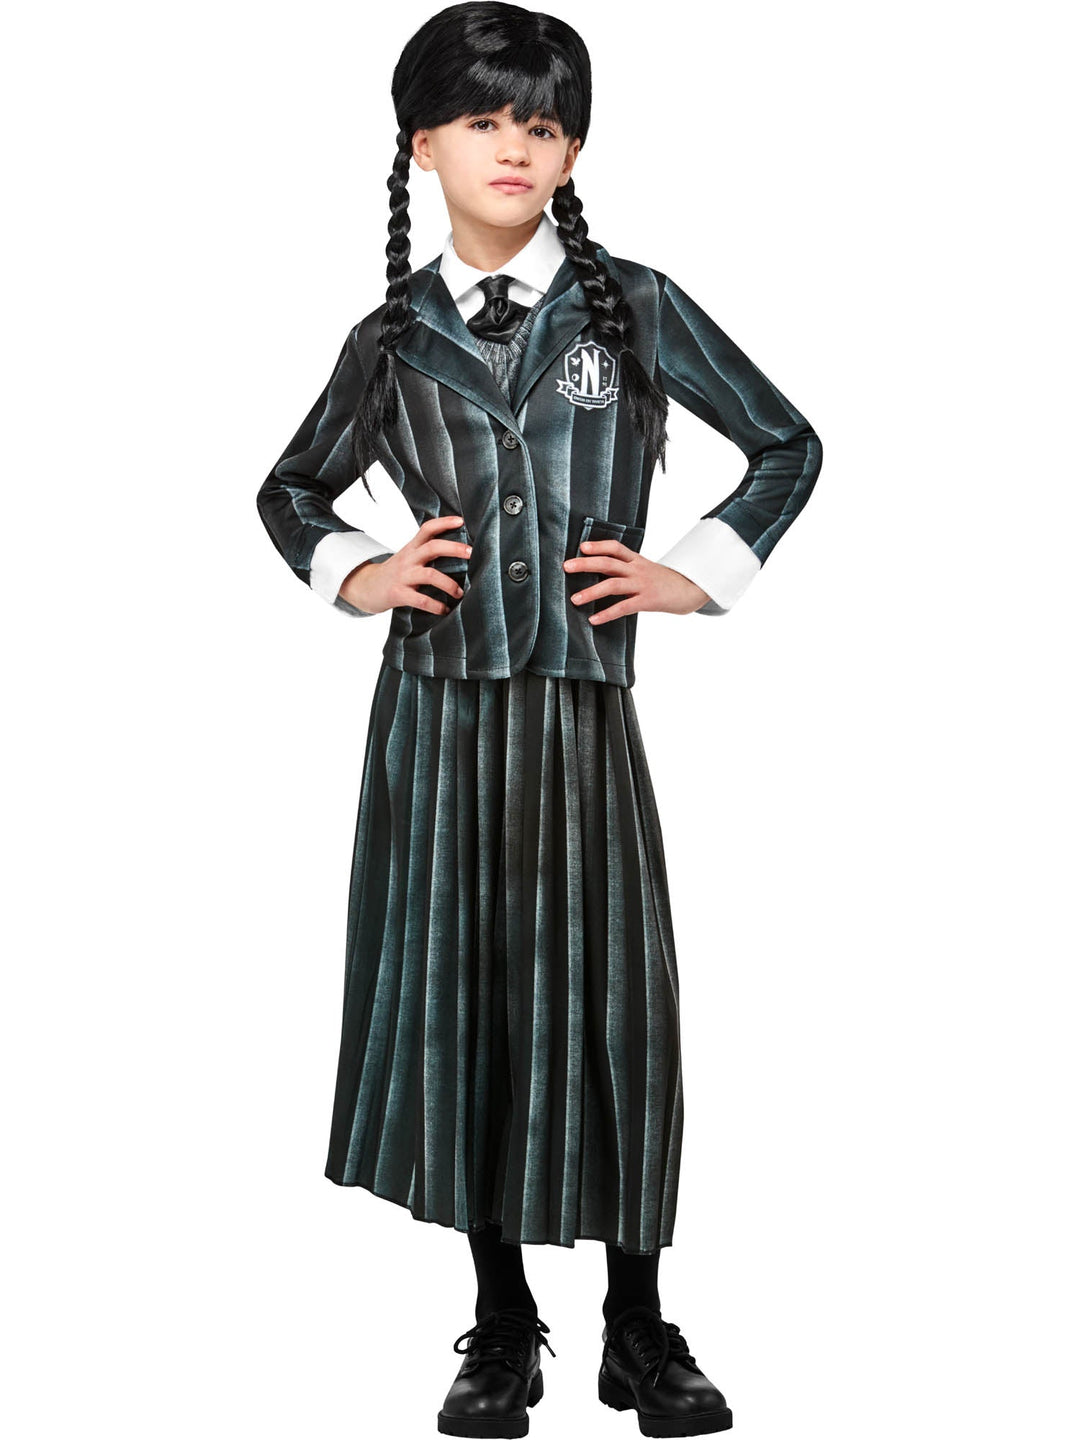 Wednesday Addams Nevermore School Uniform Girls Costume